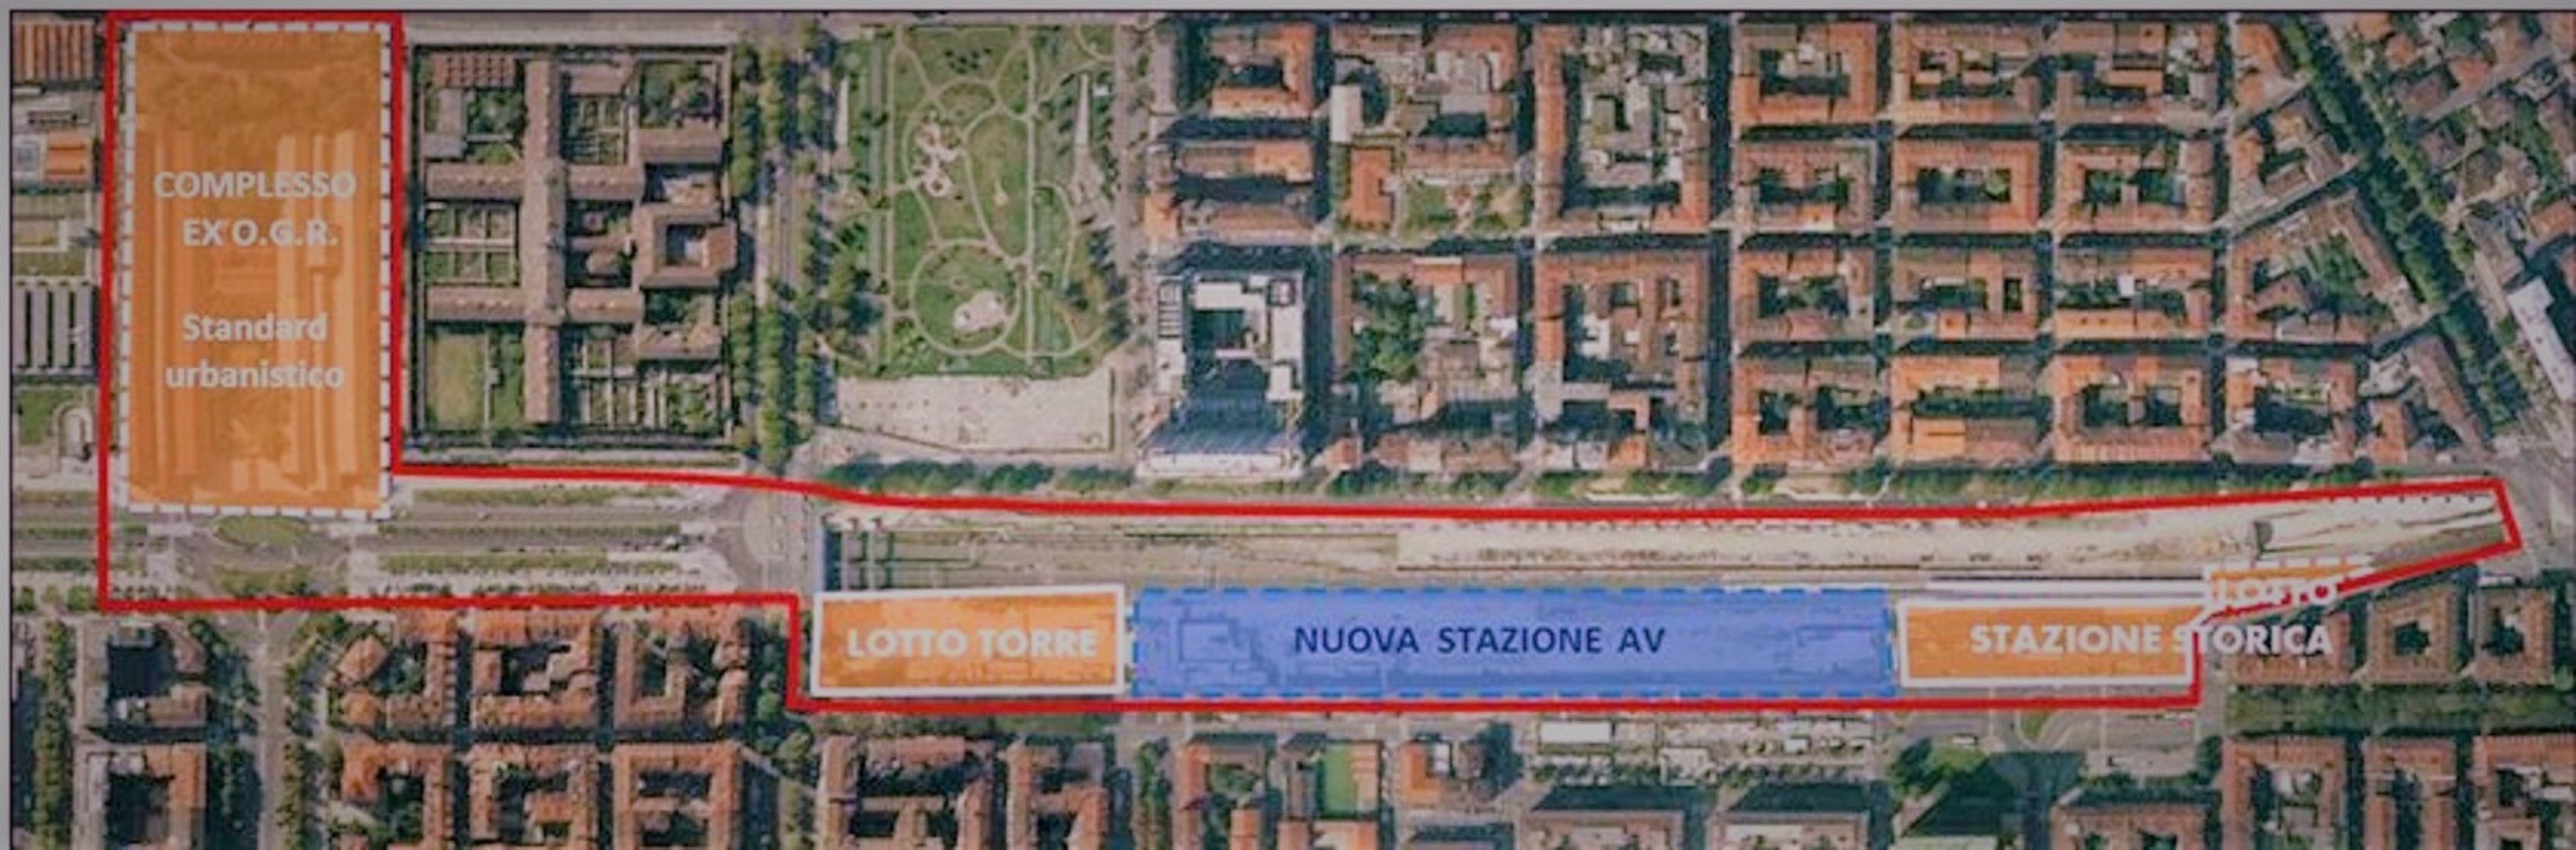 Spina 2, luogo di trasformazione urbana @ Porta Susa - Stazione FS. Torino